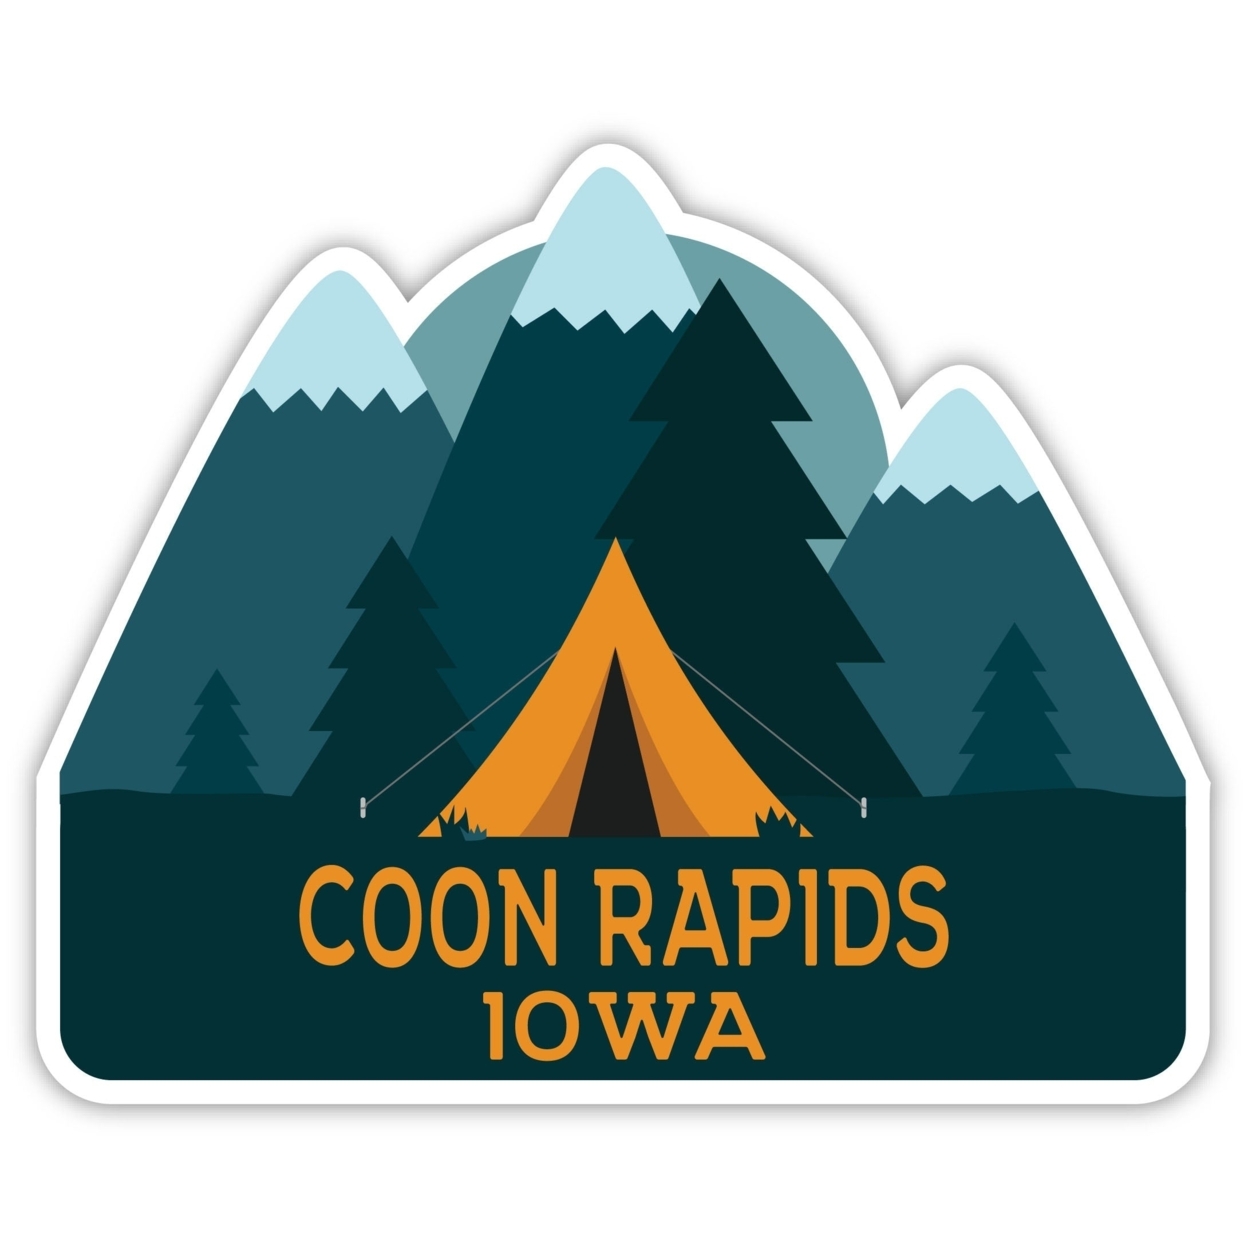 Coon Rapids Iowa Souvenir Decorative Stickers (Choose Theme And Size) - Single Unit, 2-Inch, Tent